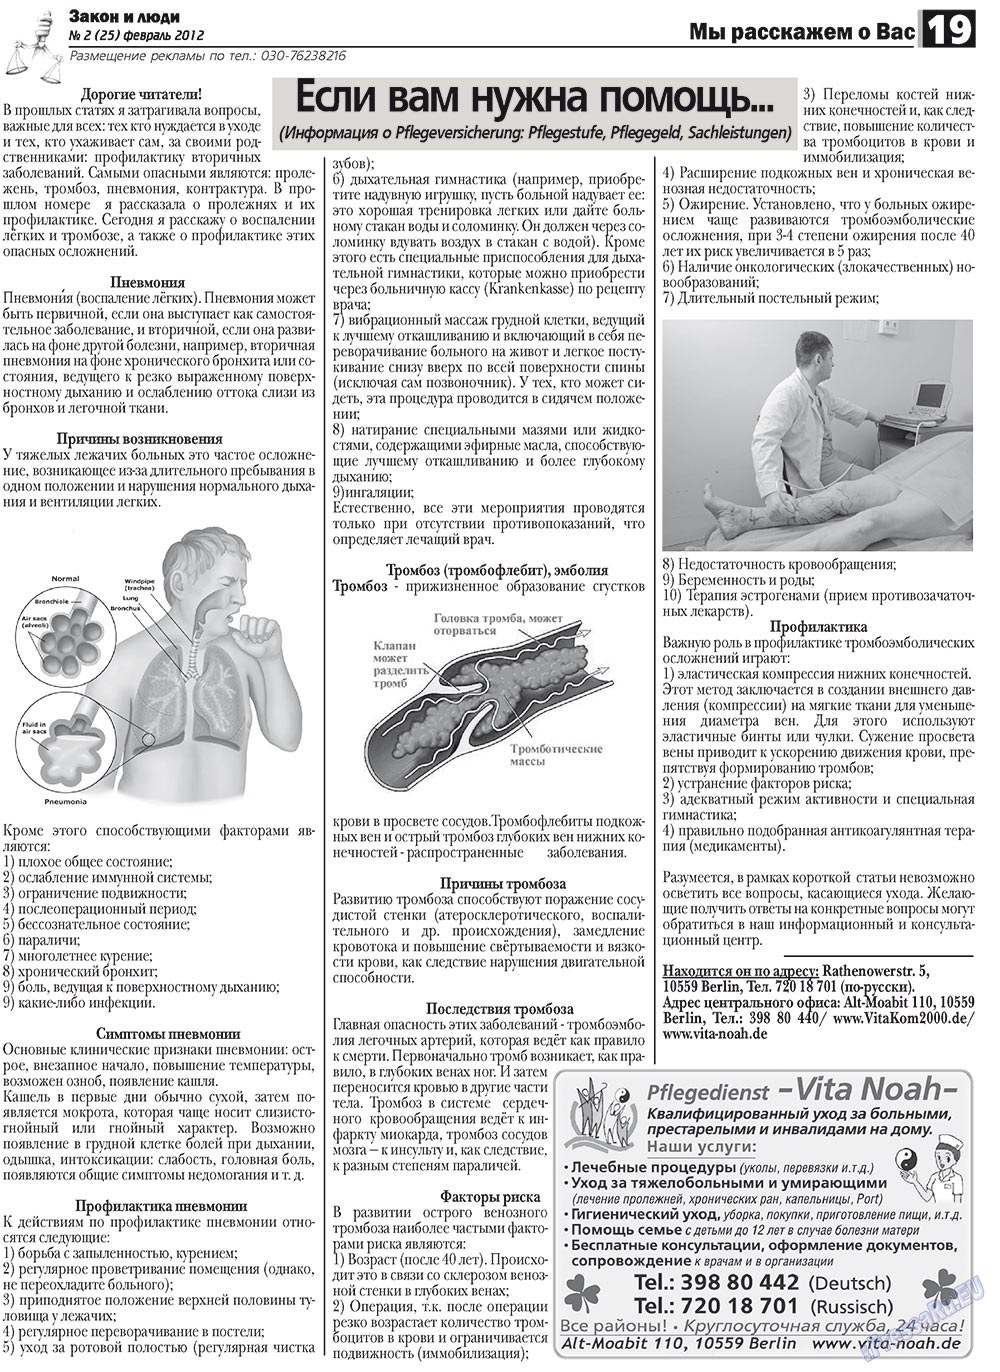 Закон и люди, газета. 2012 №2 стр.19